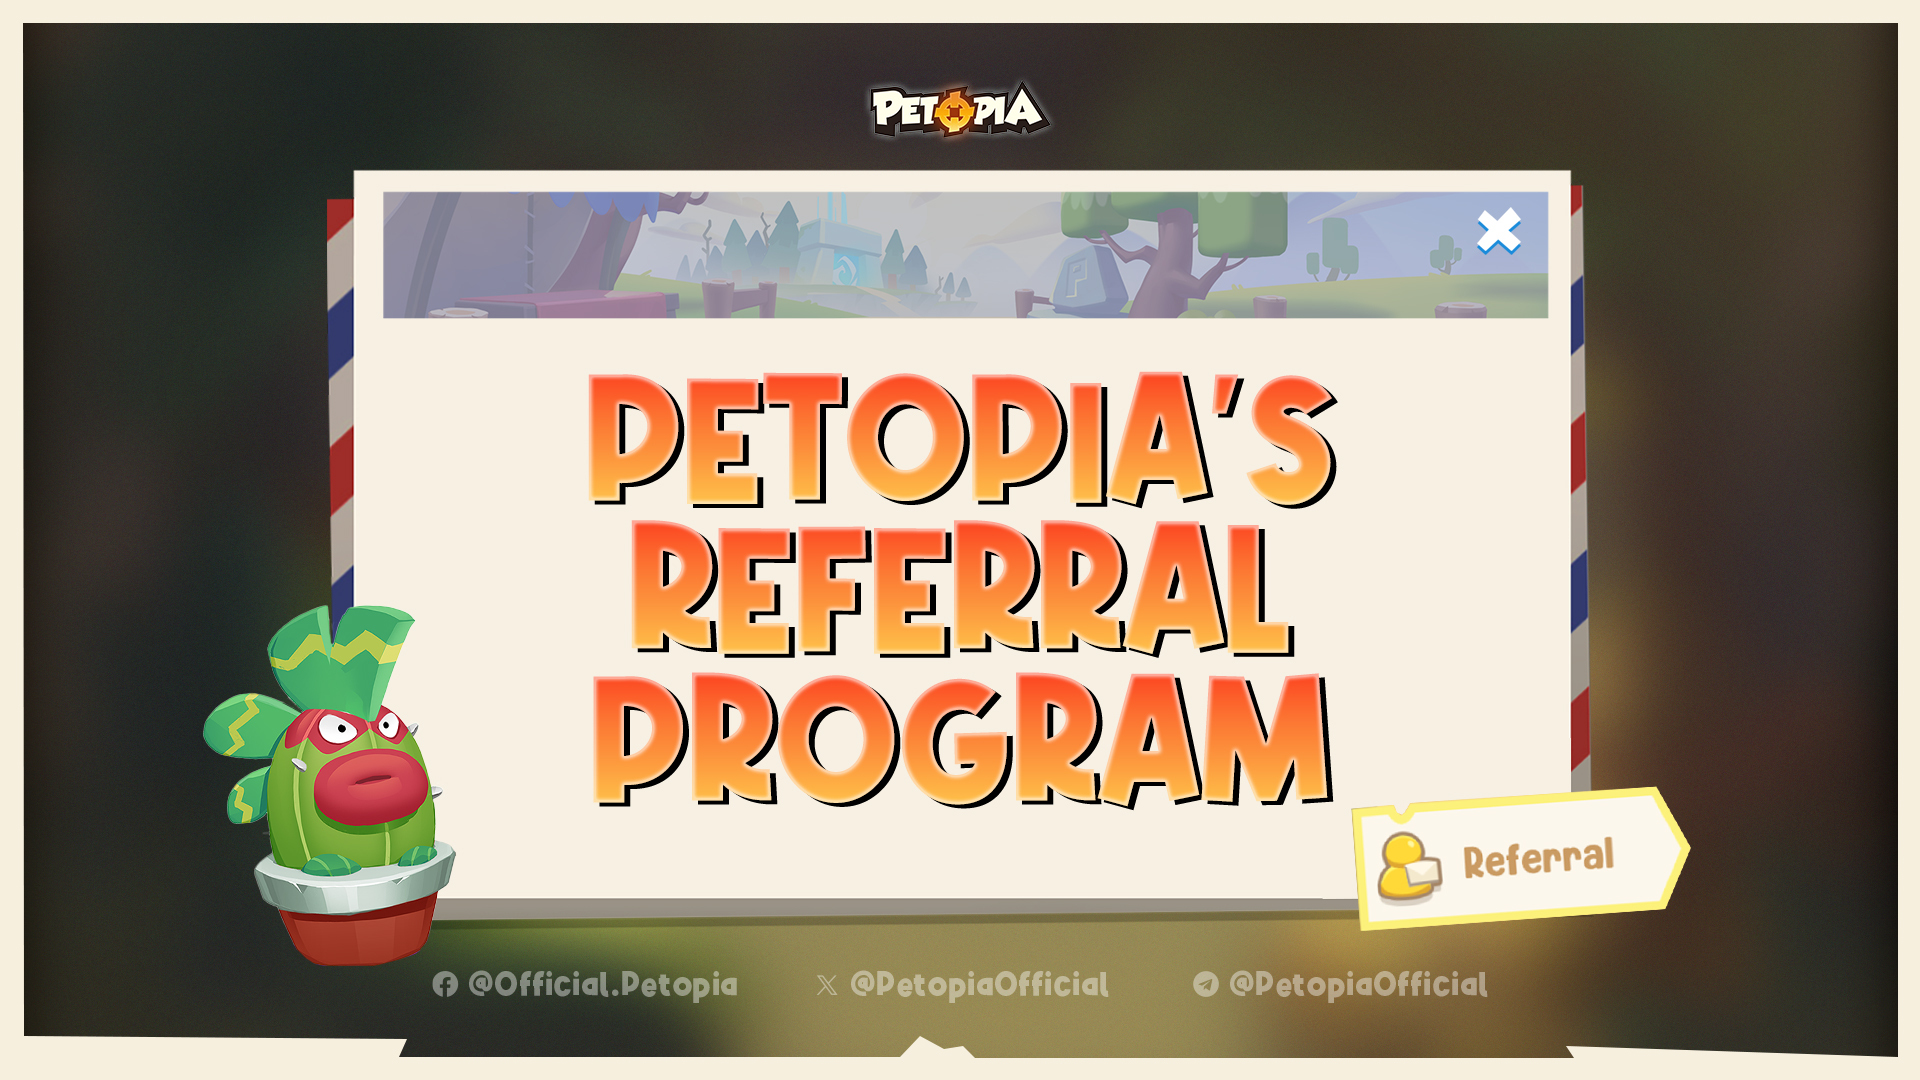 Petopia’s Referral Program